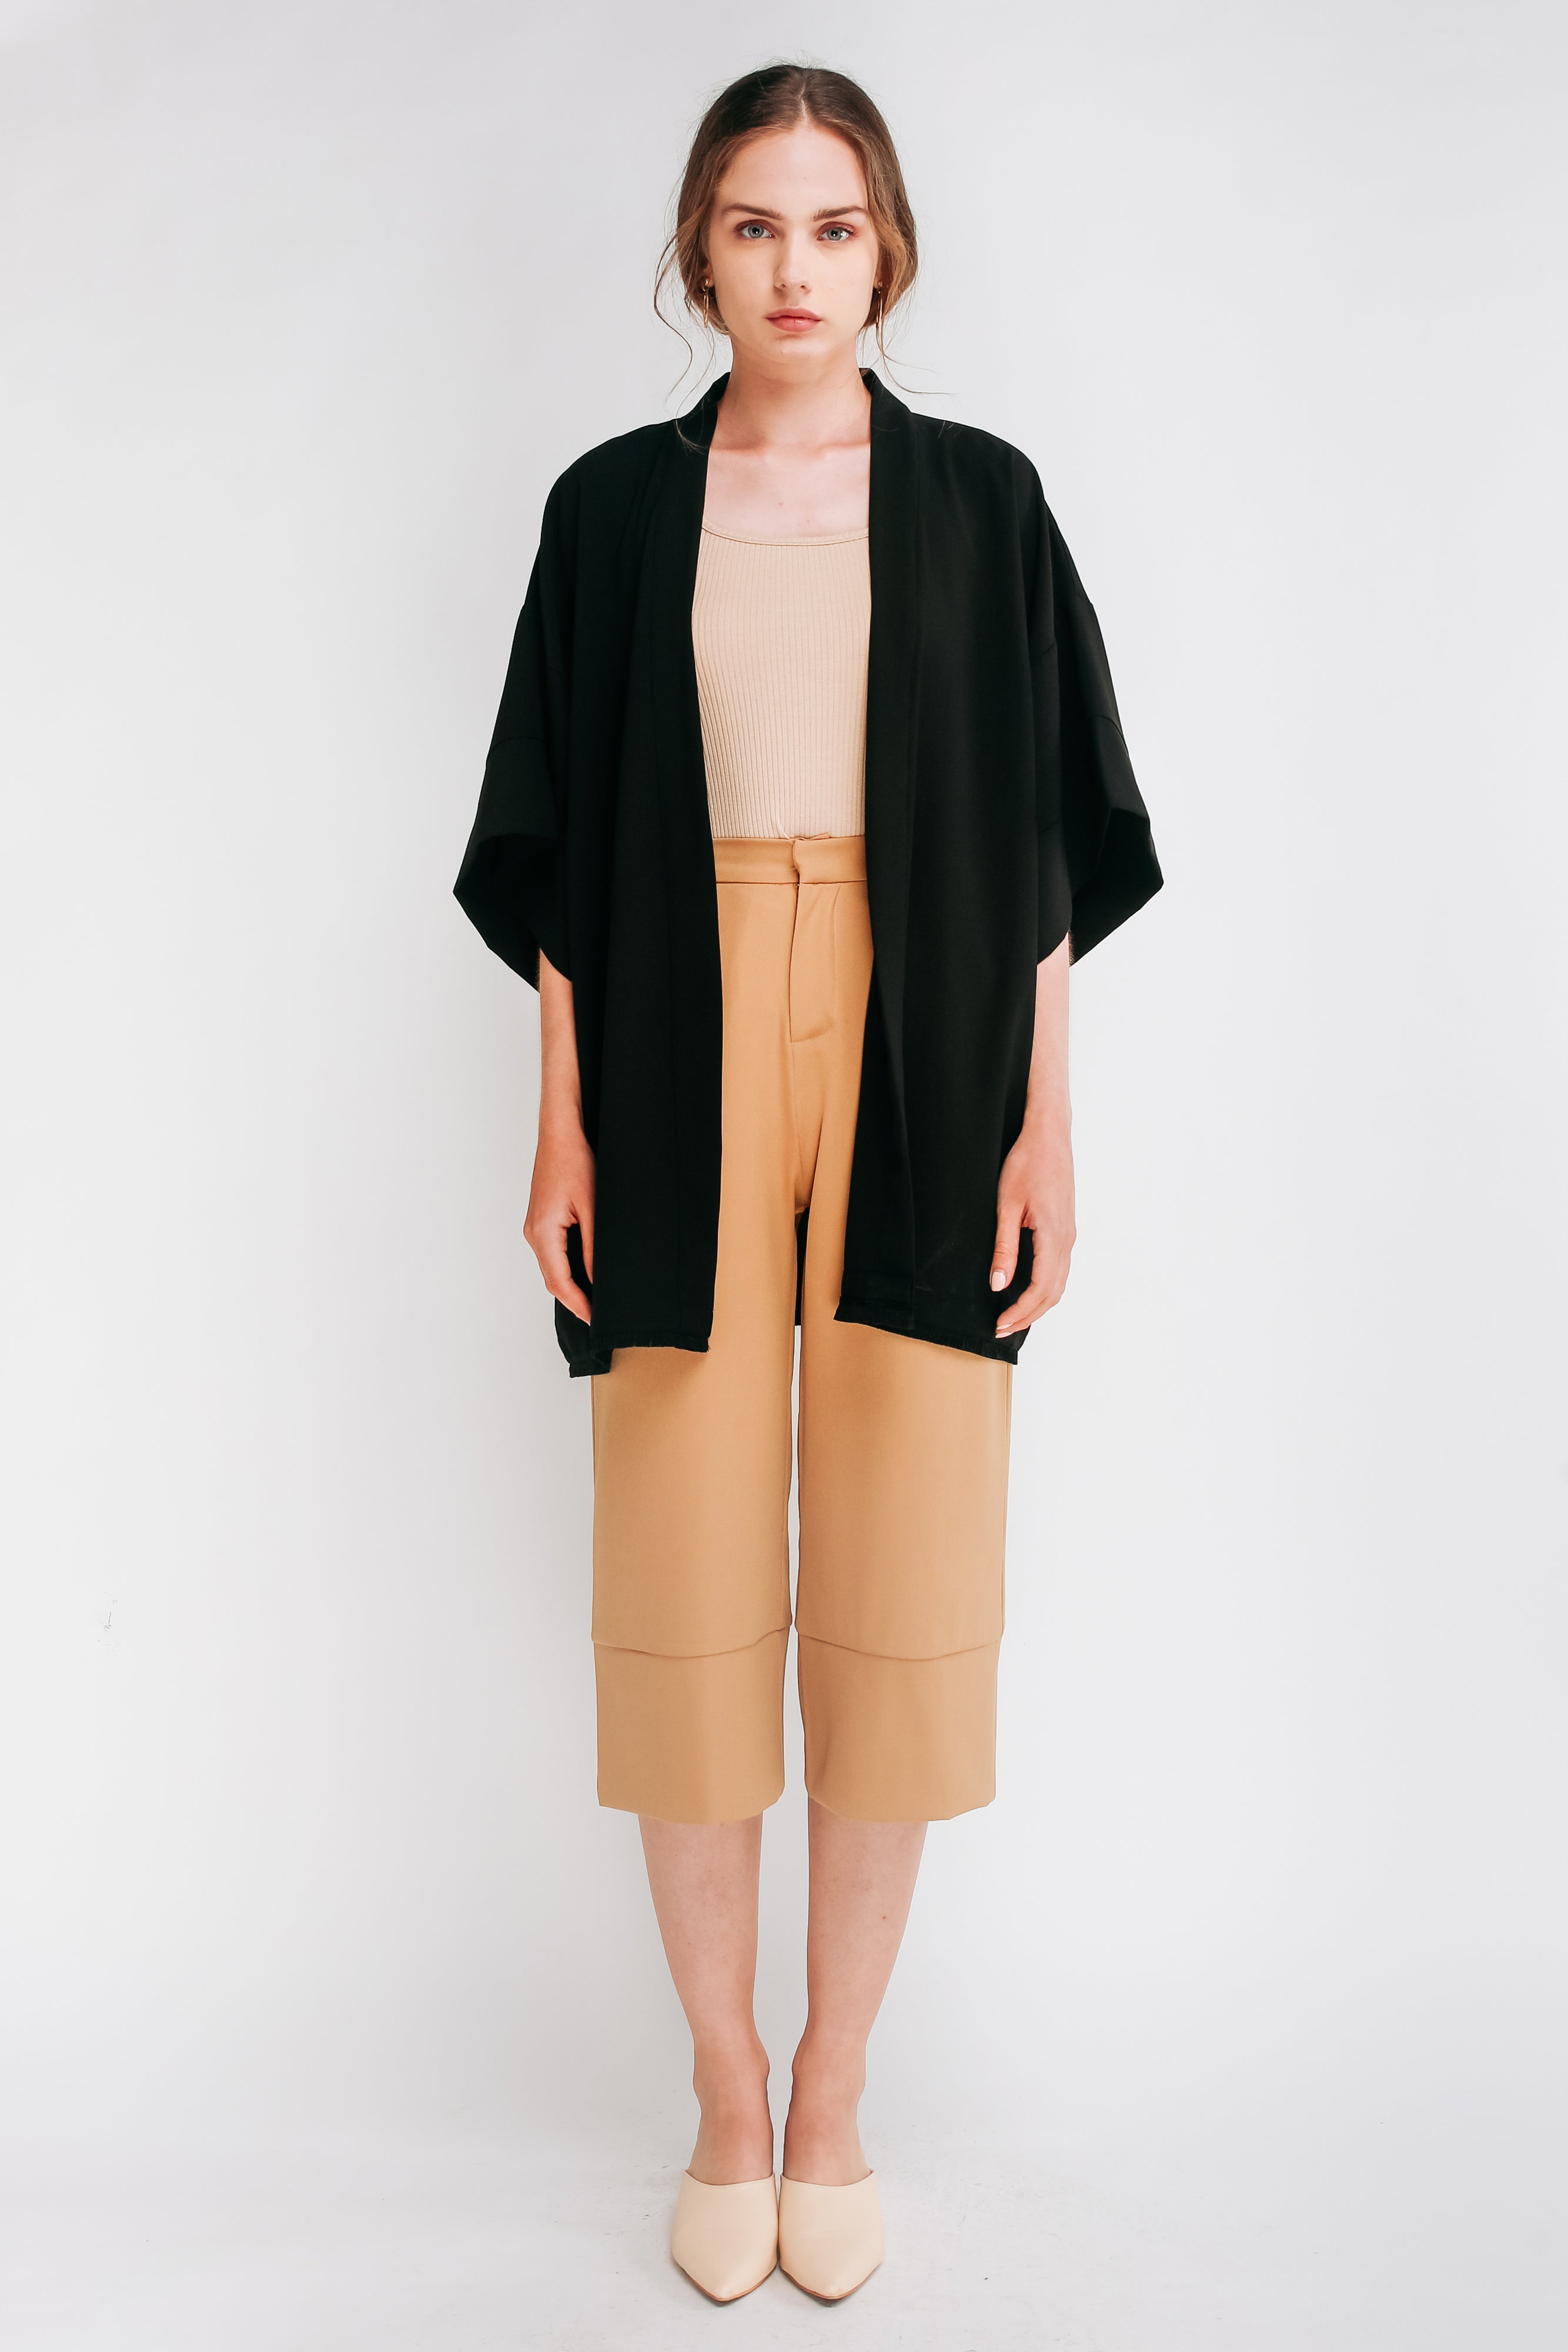 Kimono Outerwear W Sash In Black